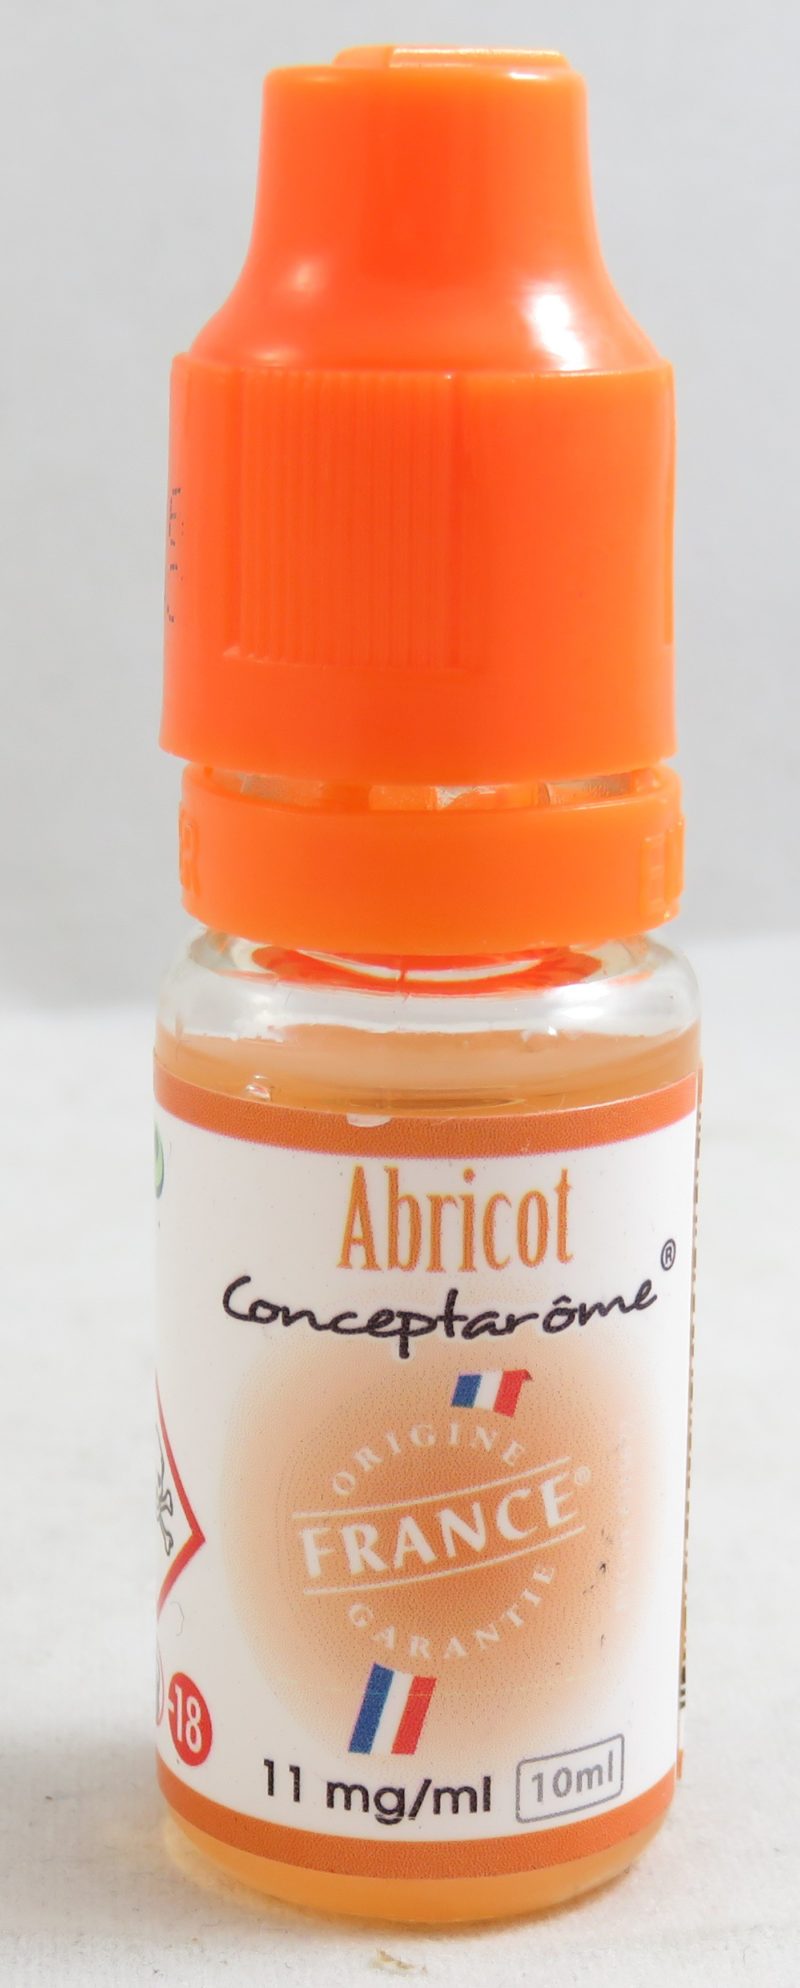 E-liquide concept arome abricot 11 mg de nicotine